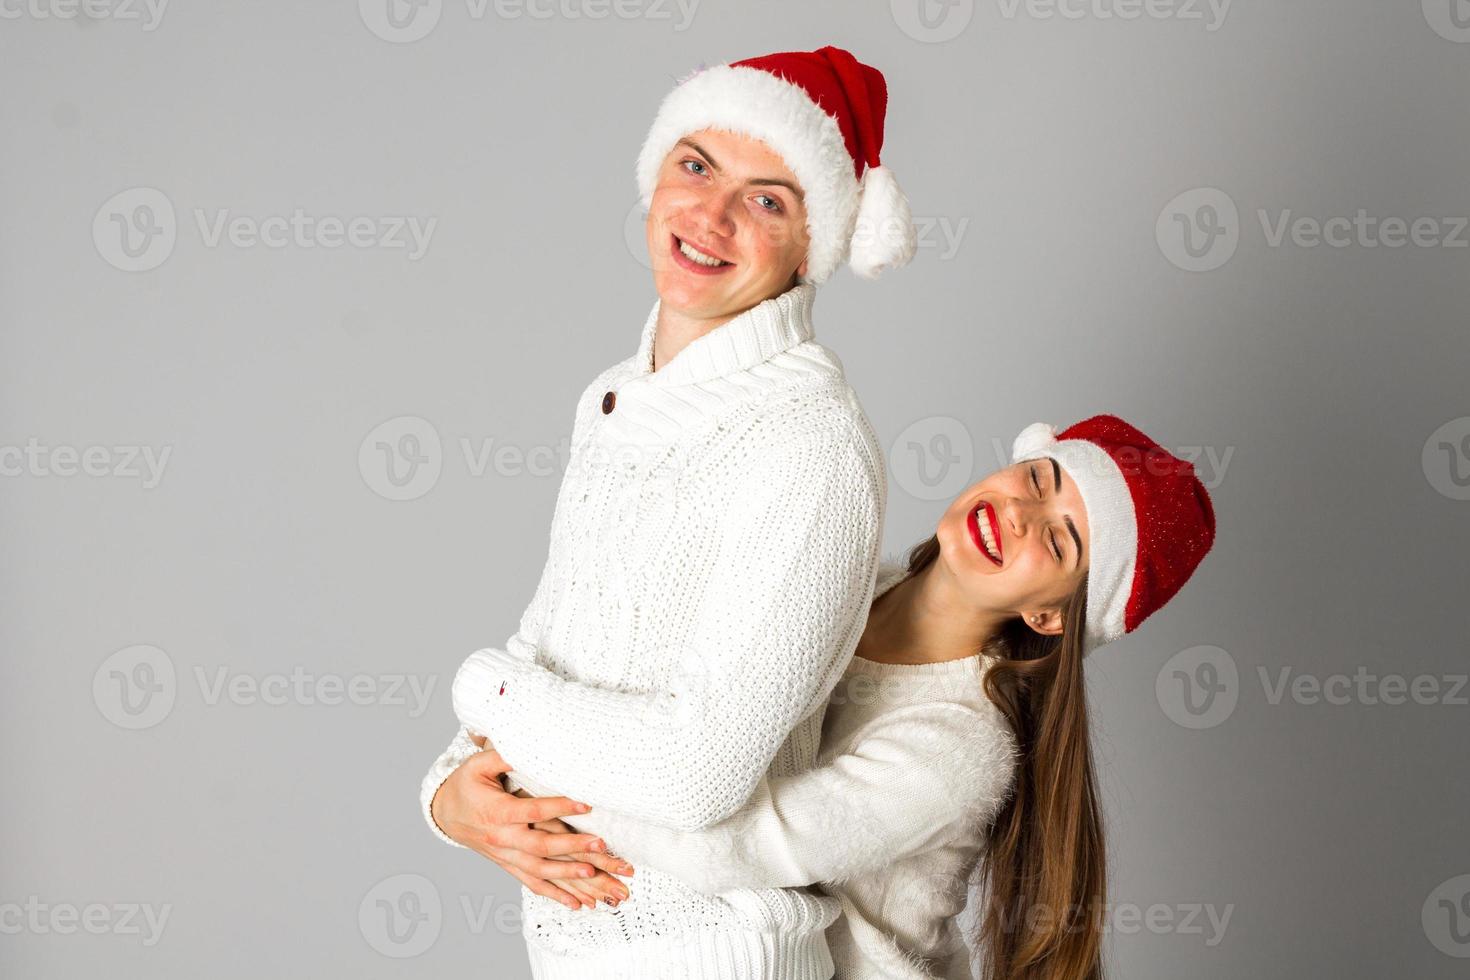 pareja celebra navidad en estudio foto